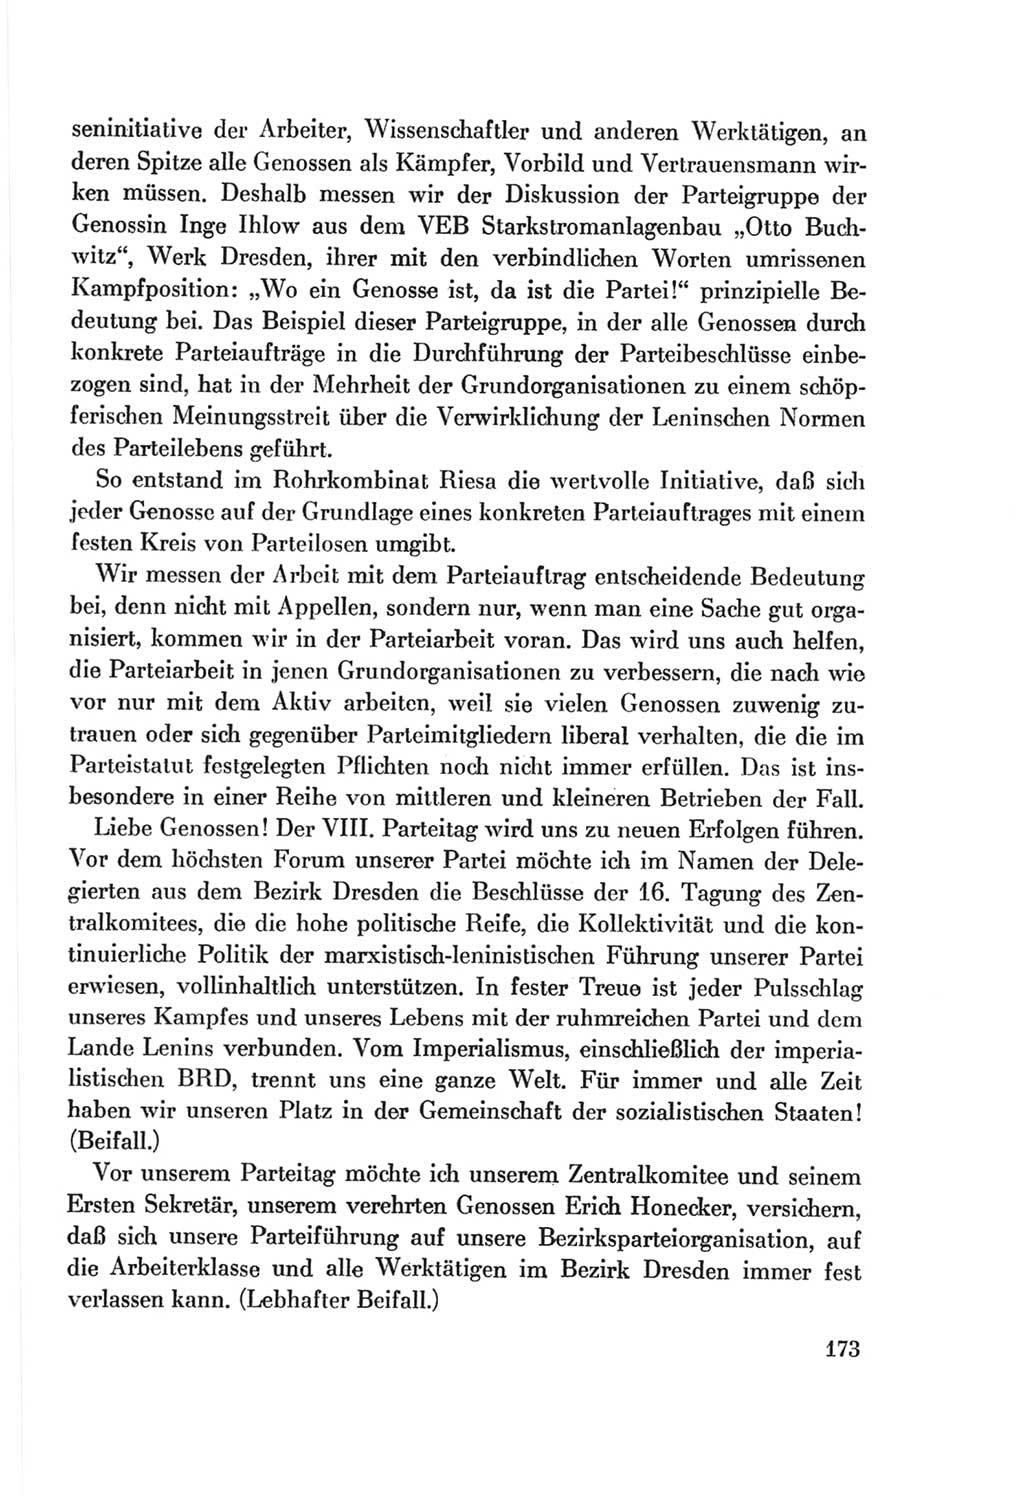 Protokoll der Verhandlungen des Ⅷ. Parteitages der Sozialistischen Einheitspartei Deutschlands (SED) [Deutsche Demokratische Republik (DDR)] 1971, Band 1, Seite 173 (Prot. Verh. Ⅷ. PT SED DDR 1971, Bd. 1, S. 173)